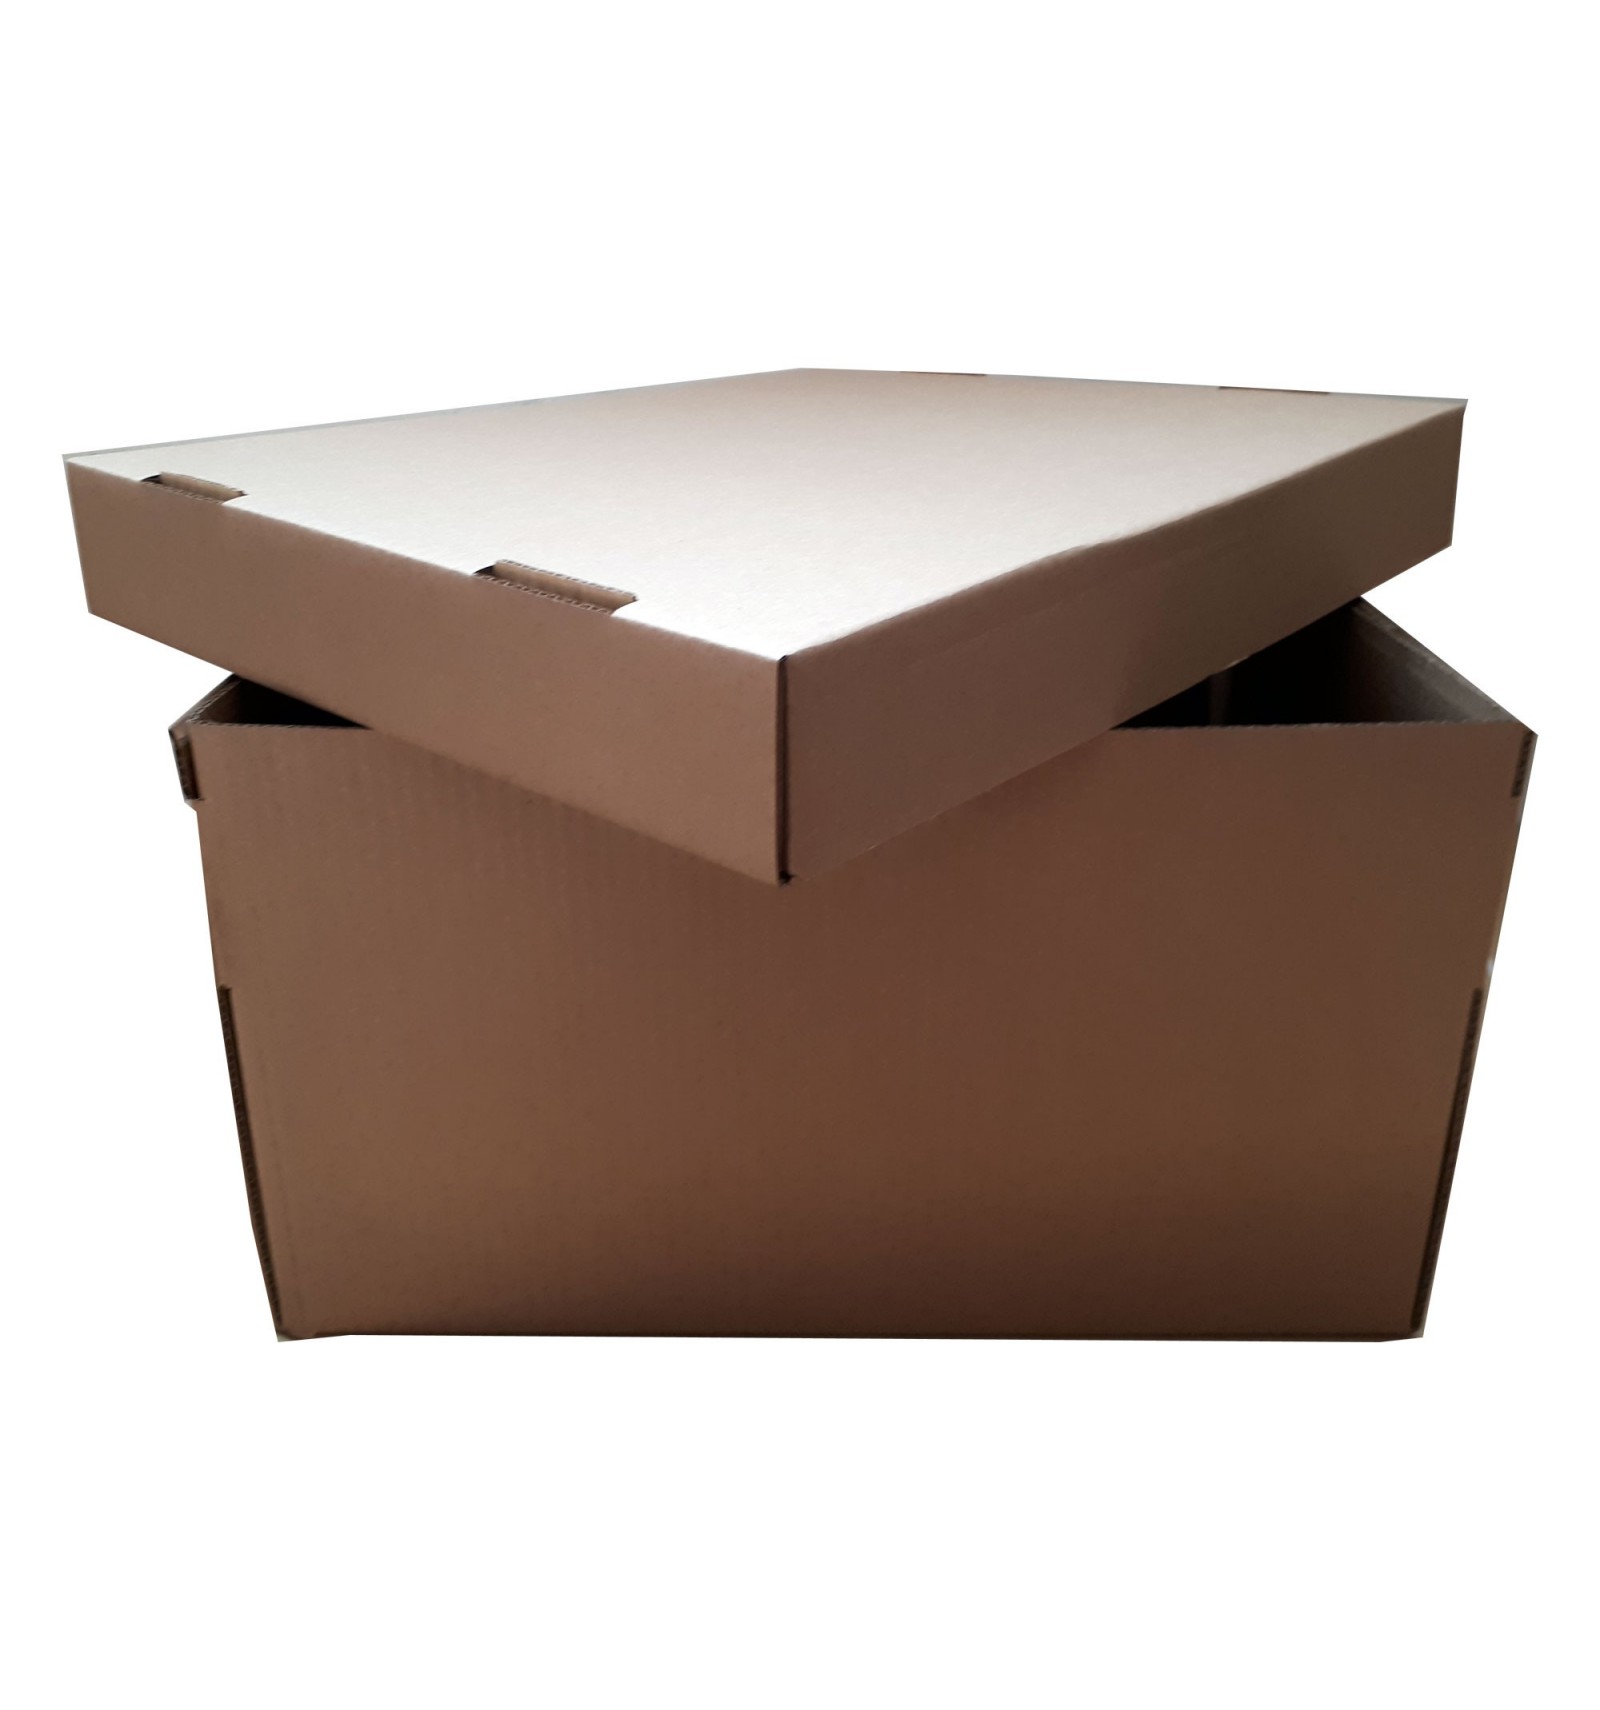 Cajas para mudanzas - Cajas de cartón - INECO, S.A.